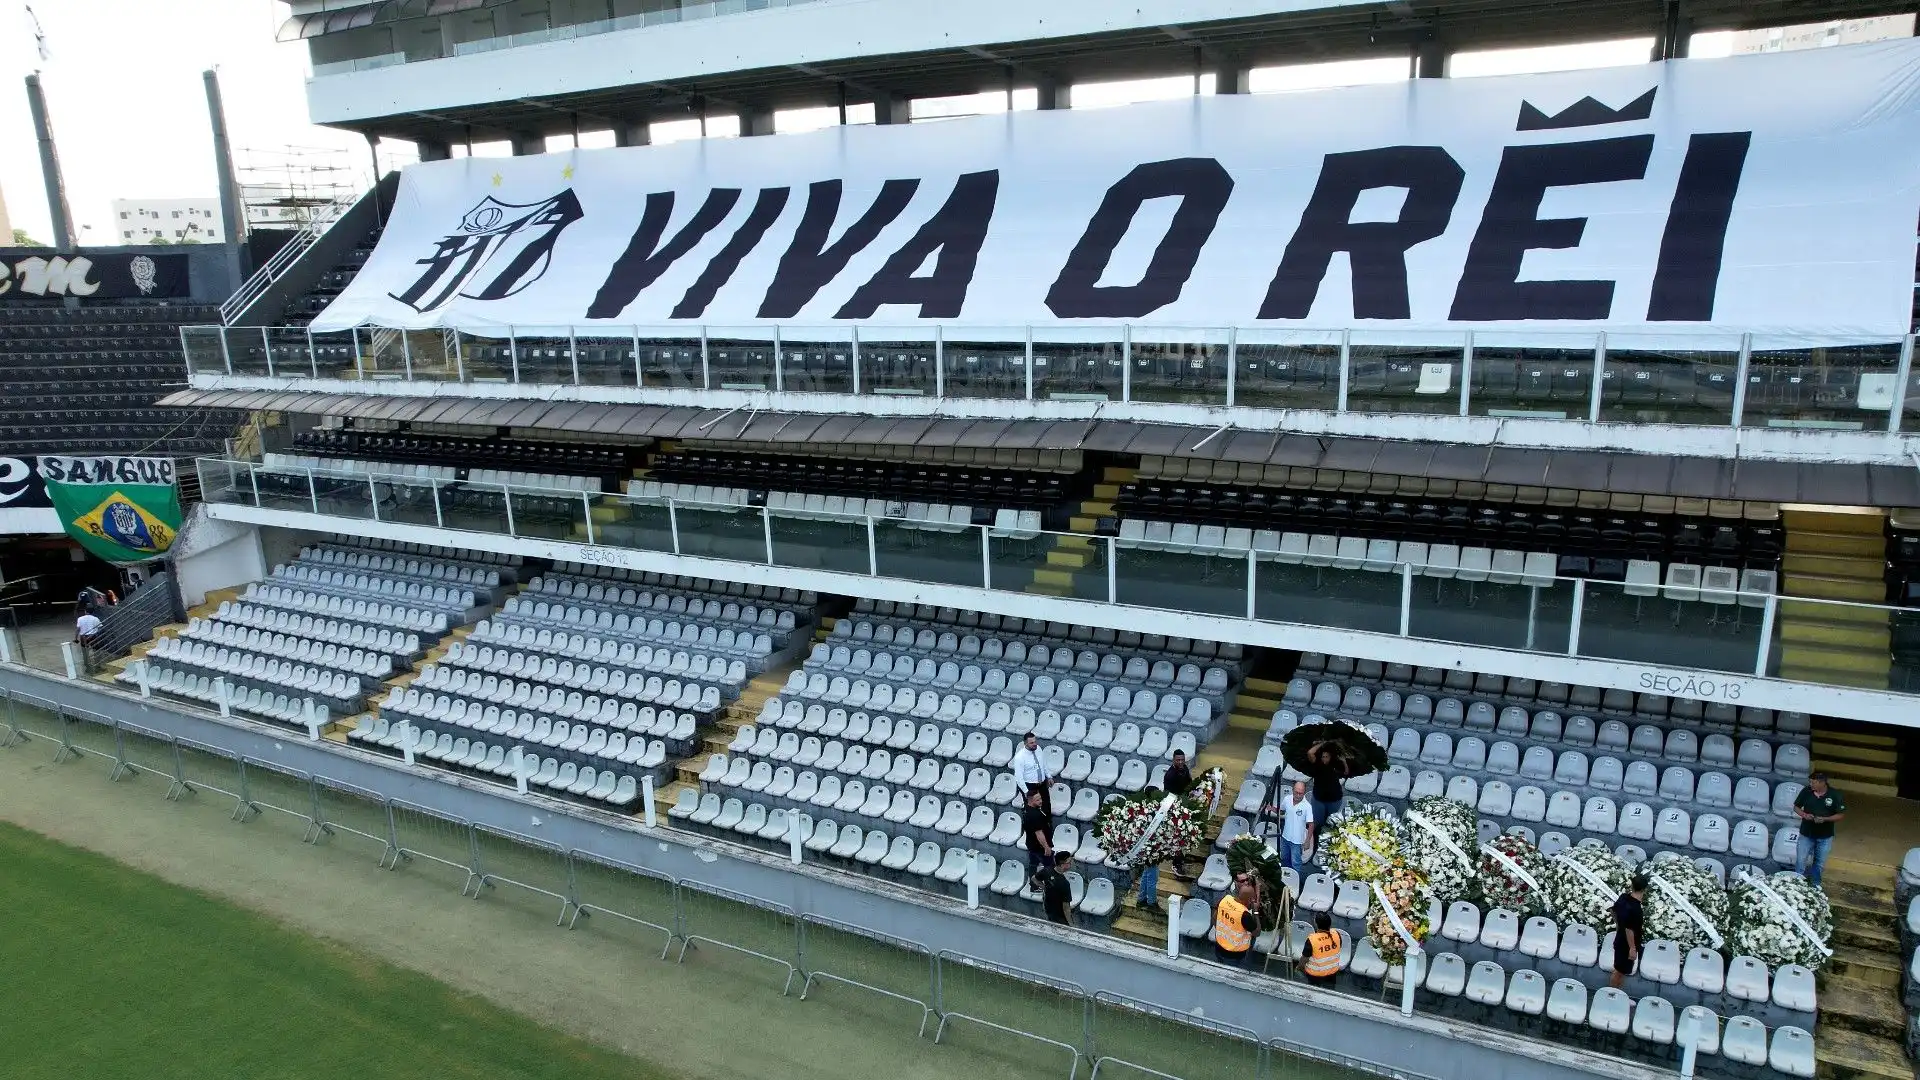 Nello stadio sono stati allestiti anche degli striscioni per ricordare la leggenda brasiliana